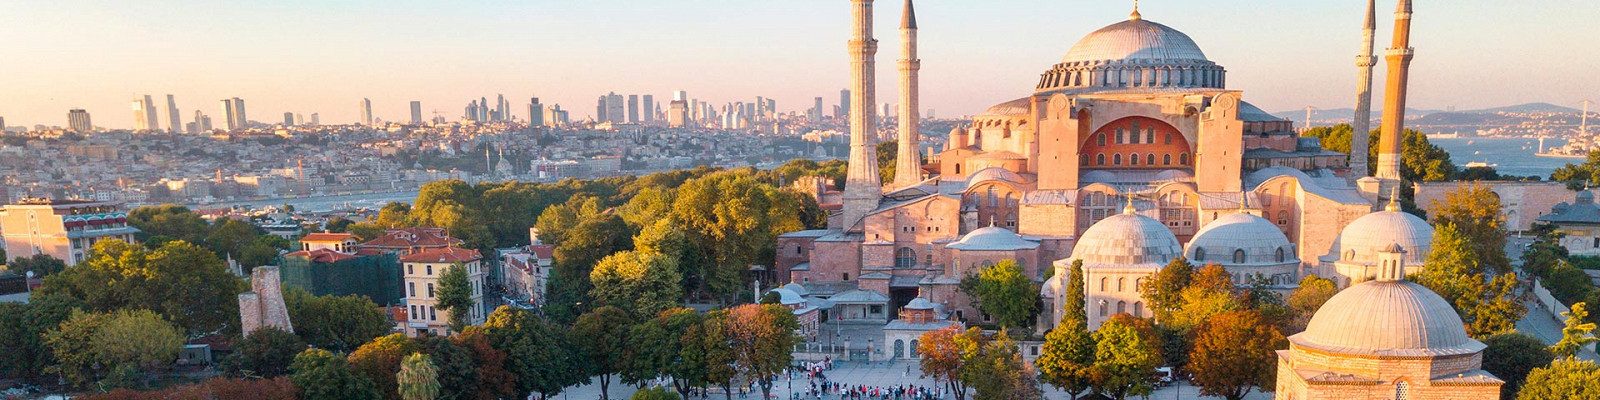 Что посмотреть в Стамбуле за 3 дня самостоятельно - маршрут, фото, описание, карта